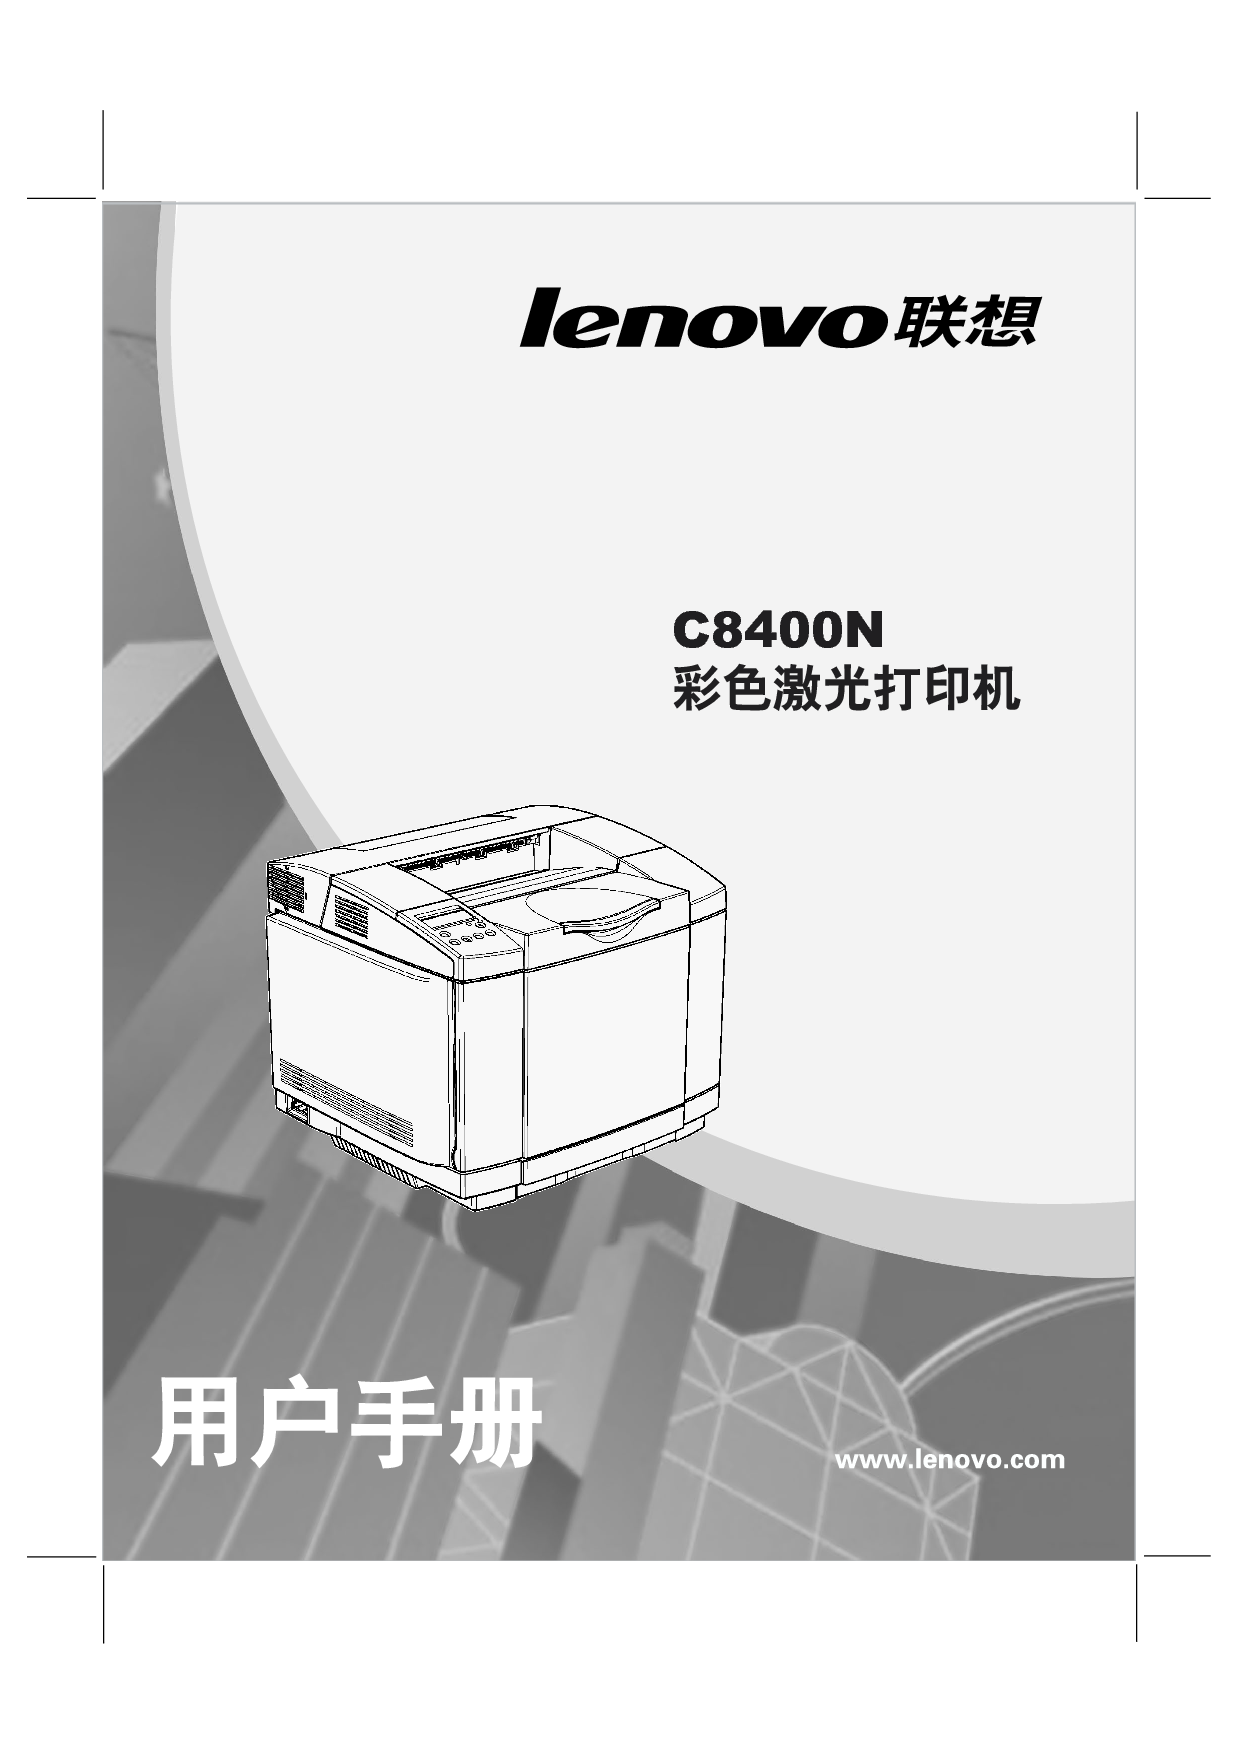 联想 Lenovo C8400N 用户手册 封面